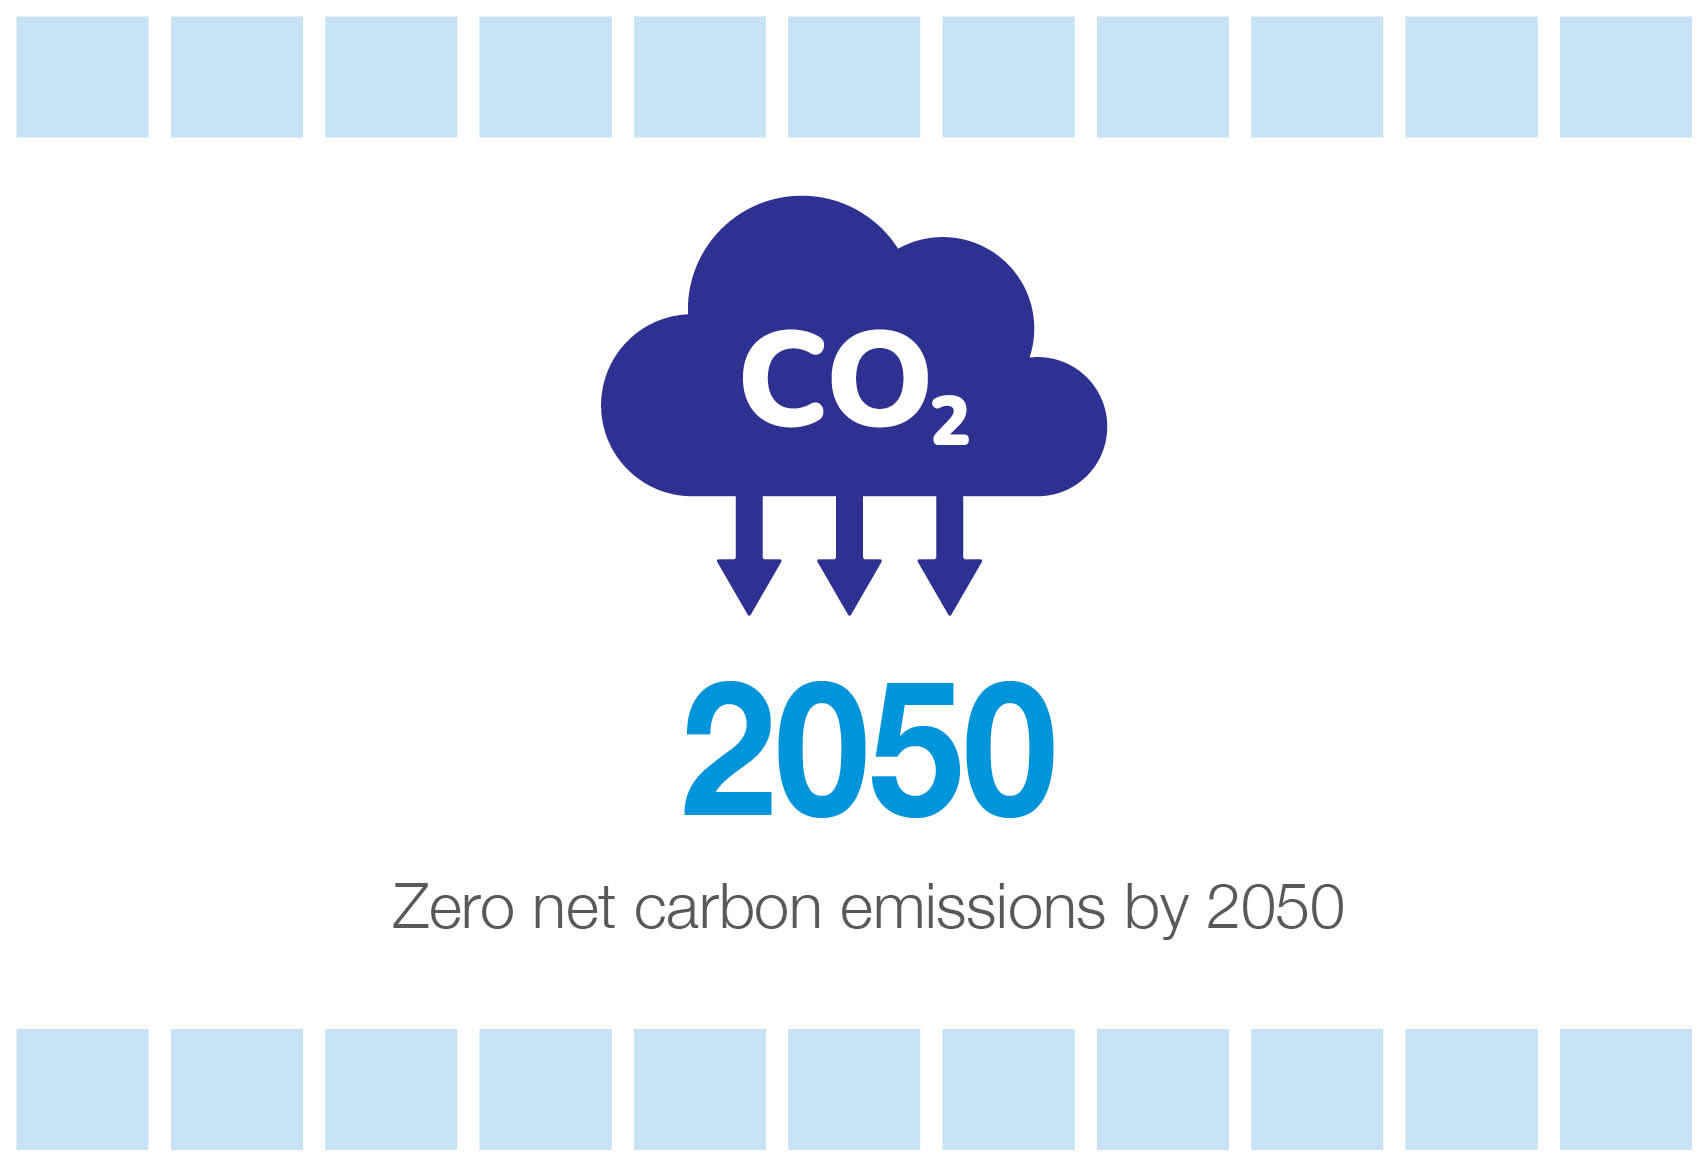 Ikonoa - Zero karbono isuri garbiak 2050erako